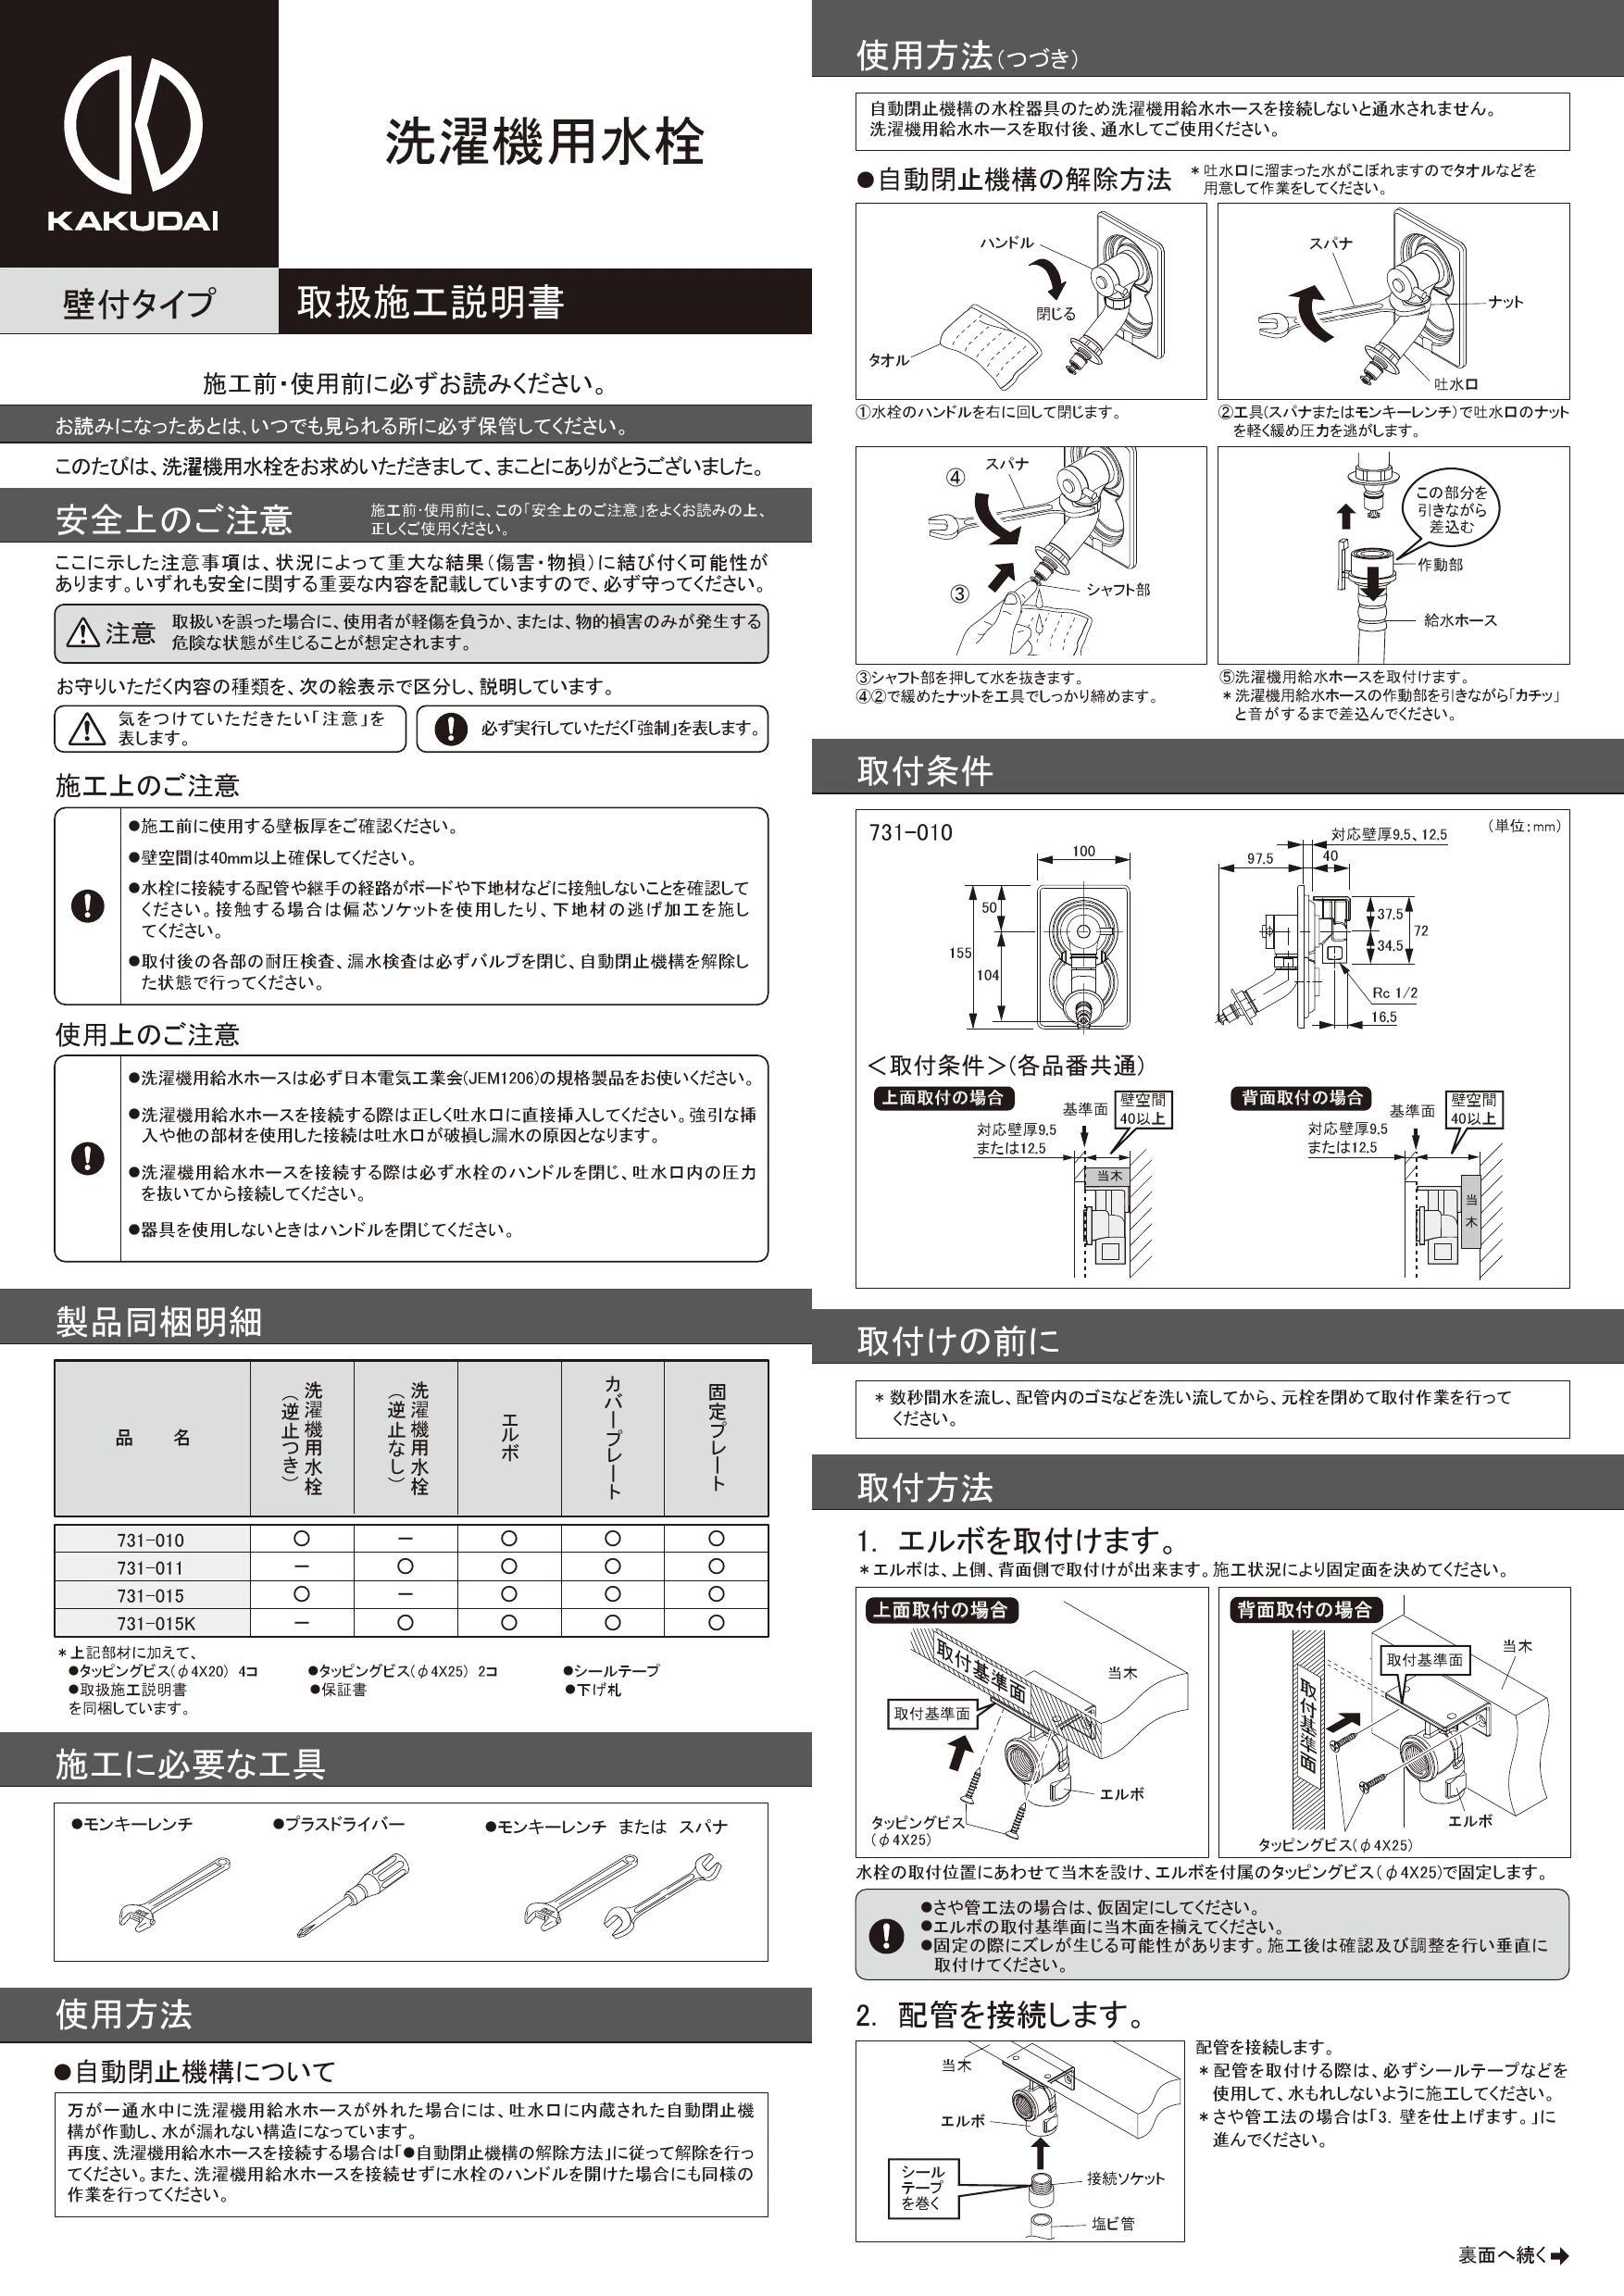 カクダイ 731-010取扱説明書 商品図面 | 通販 プロストア ダイレクト